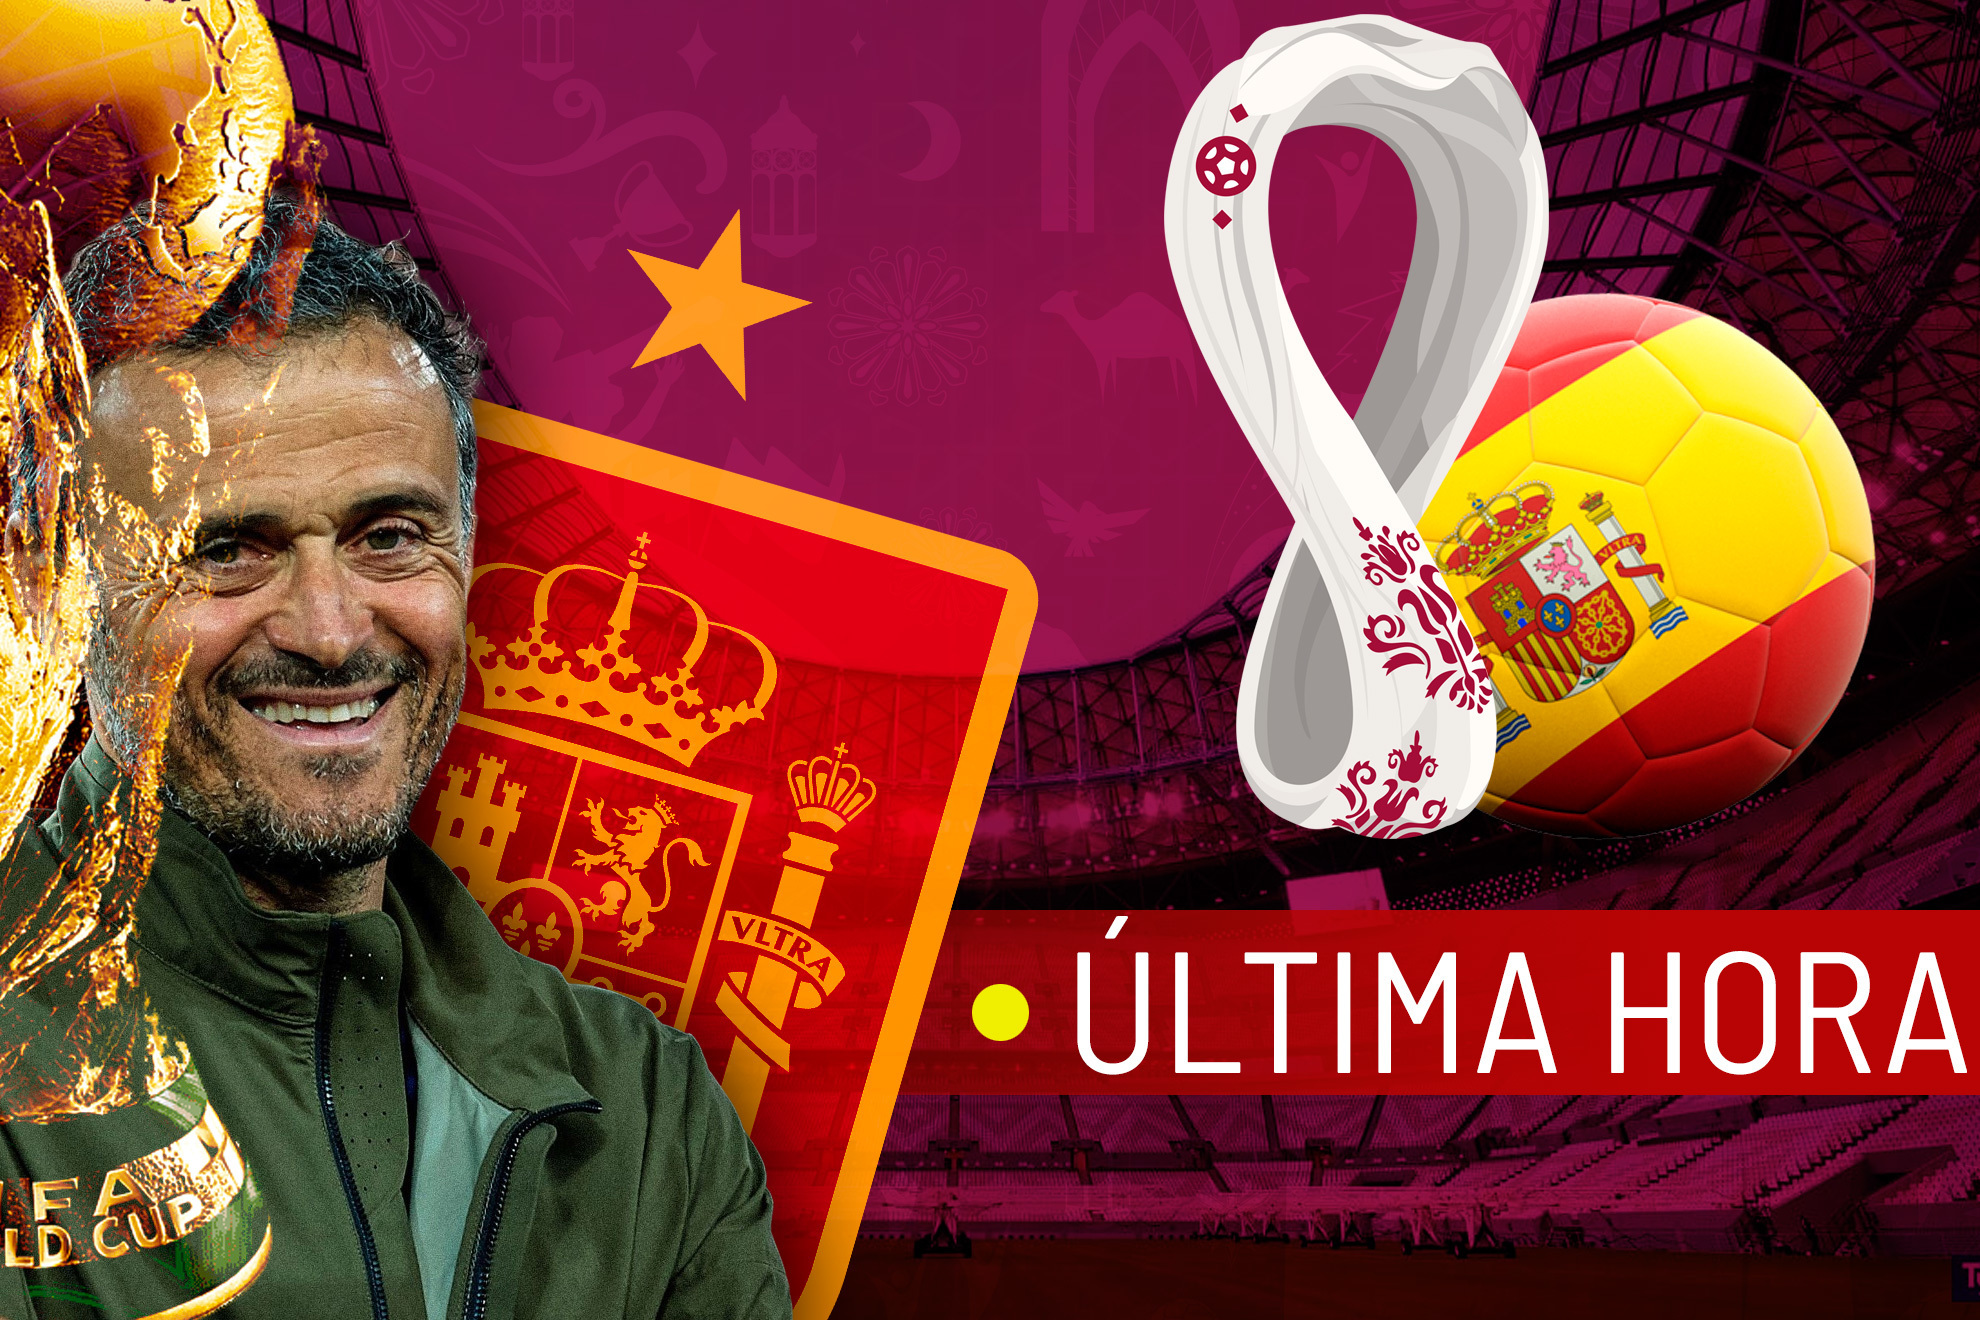 España en el Mundial de Qatar 2022, en directo | Última hora de la selección española en la Copa del Mundo hoy en vivo